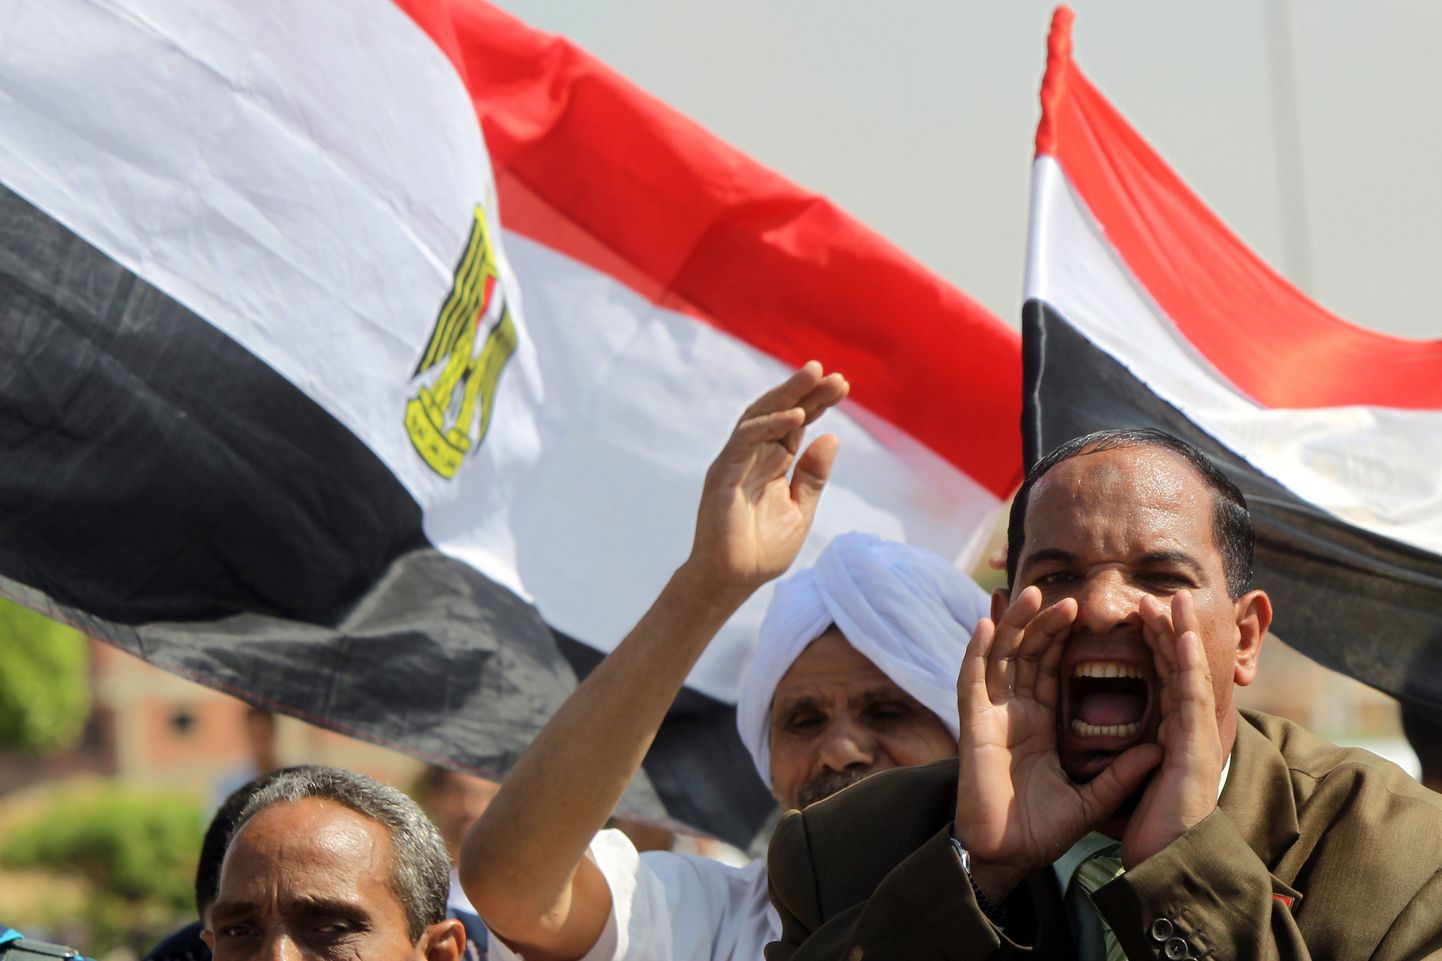 Kairos valmistutakse suurmeeleavalduseks